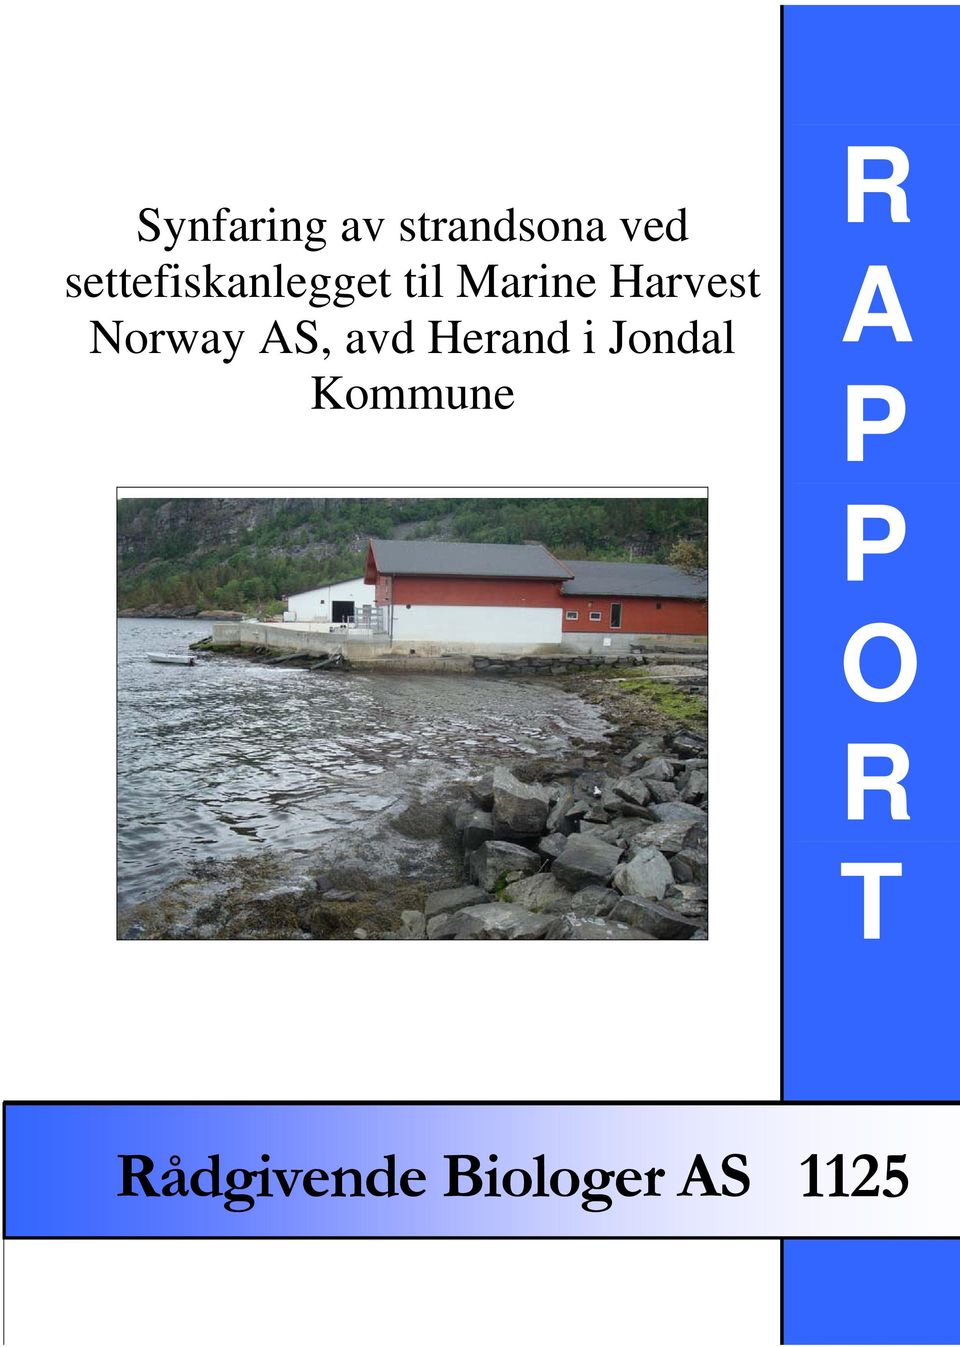 Norway AS, avd Herand i Jondal